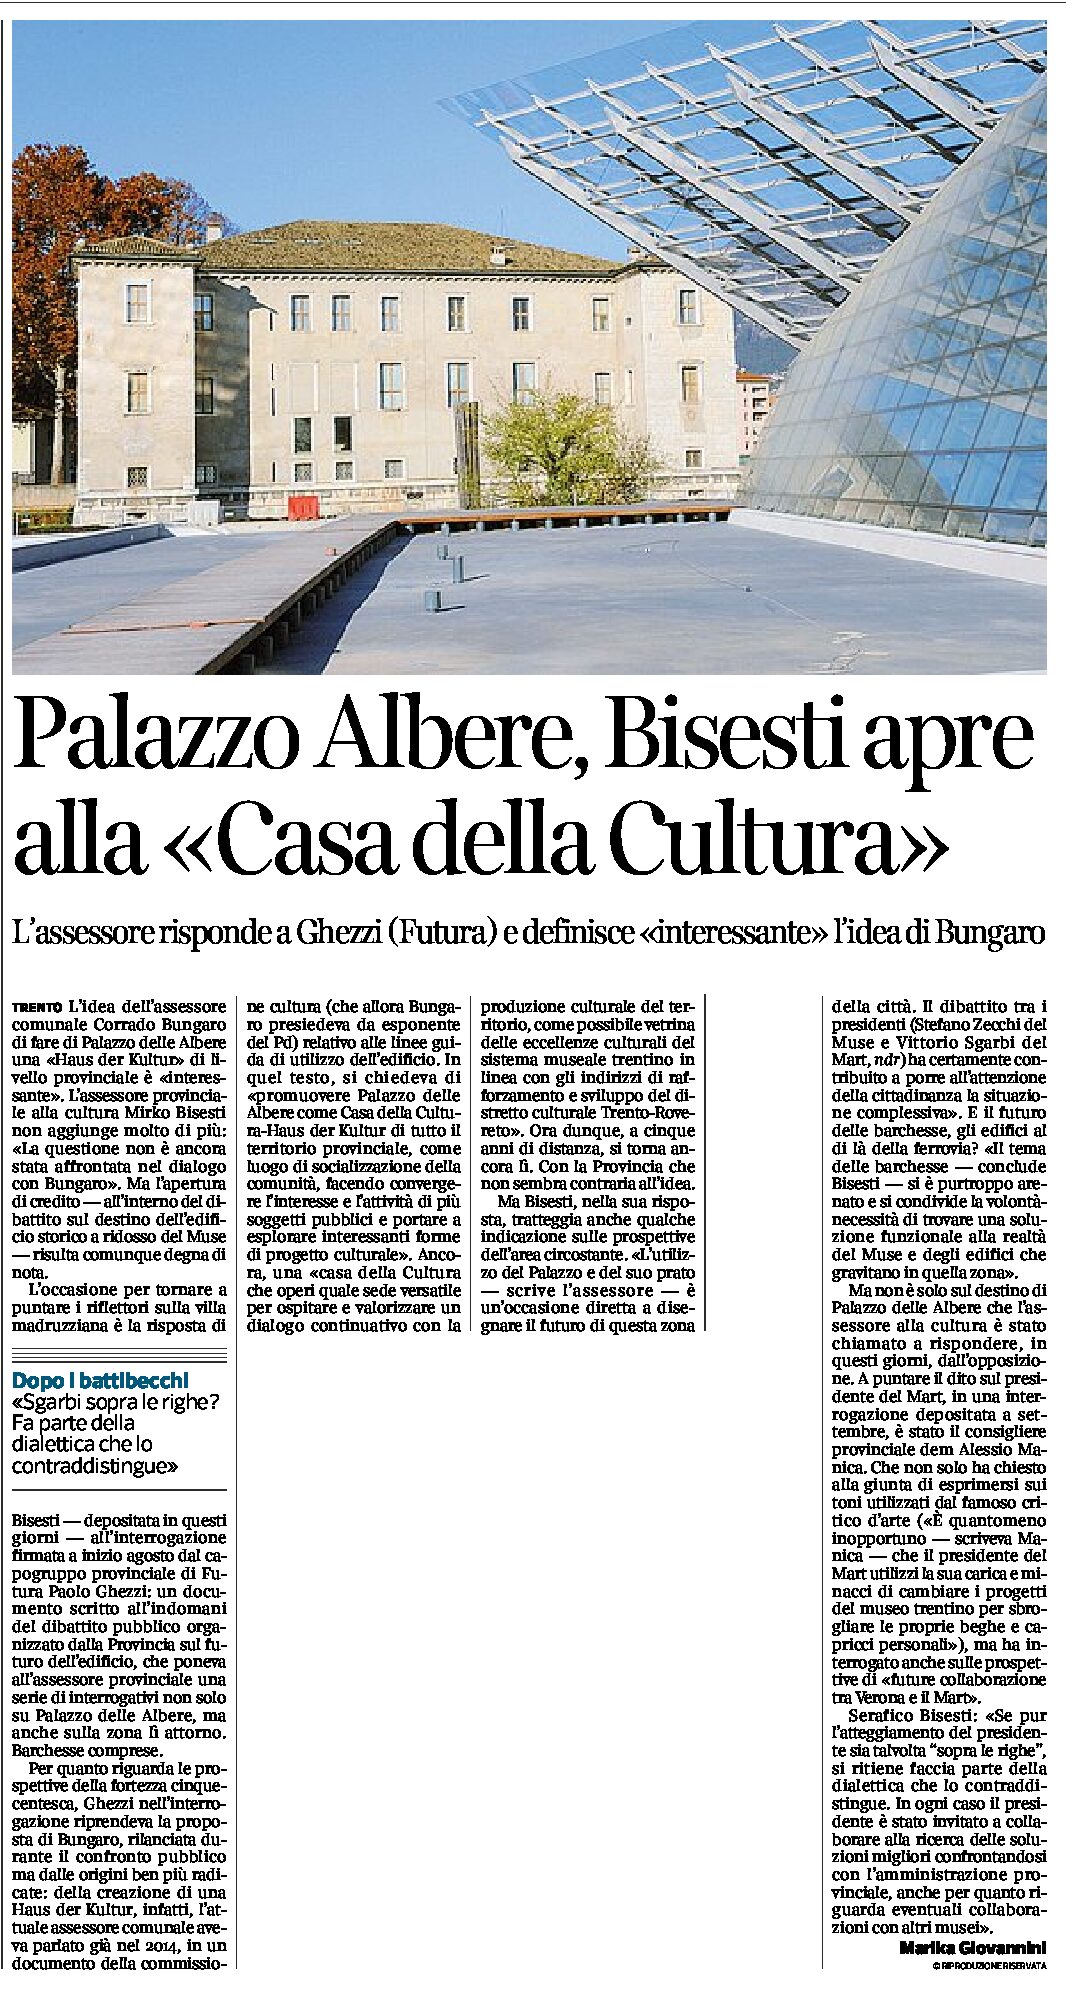 Trento, Palazzo delle Albere: Bisesti apre alla “Casa della Cultura”